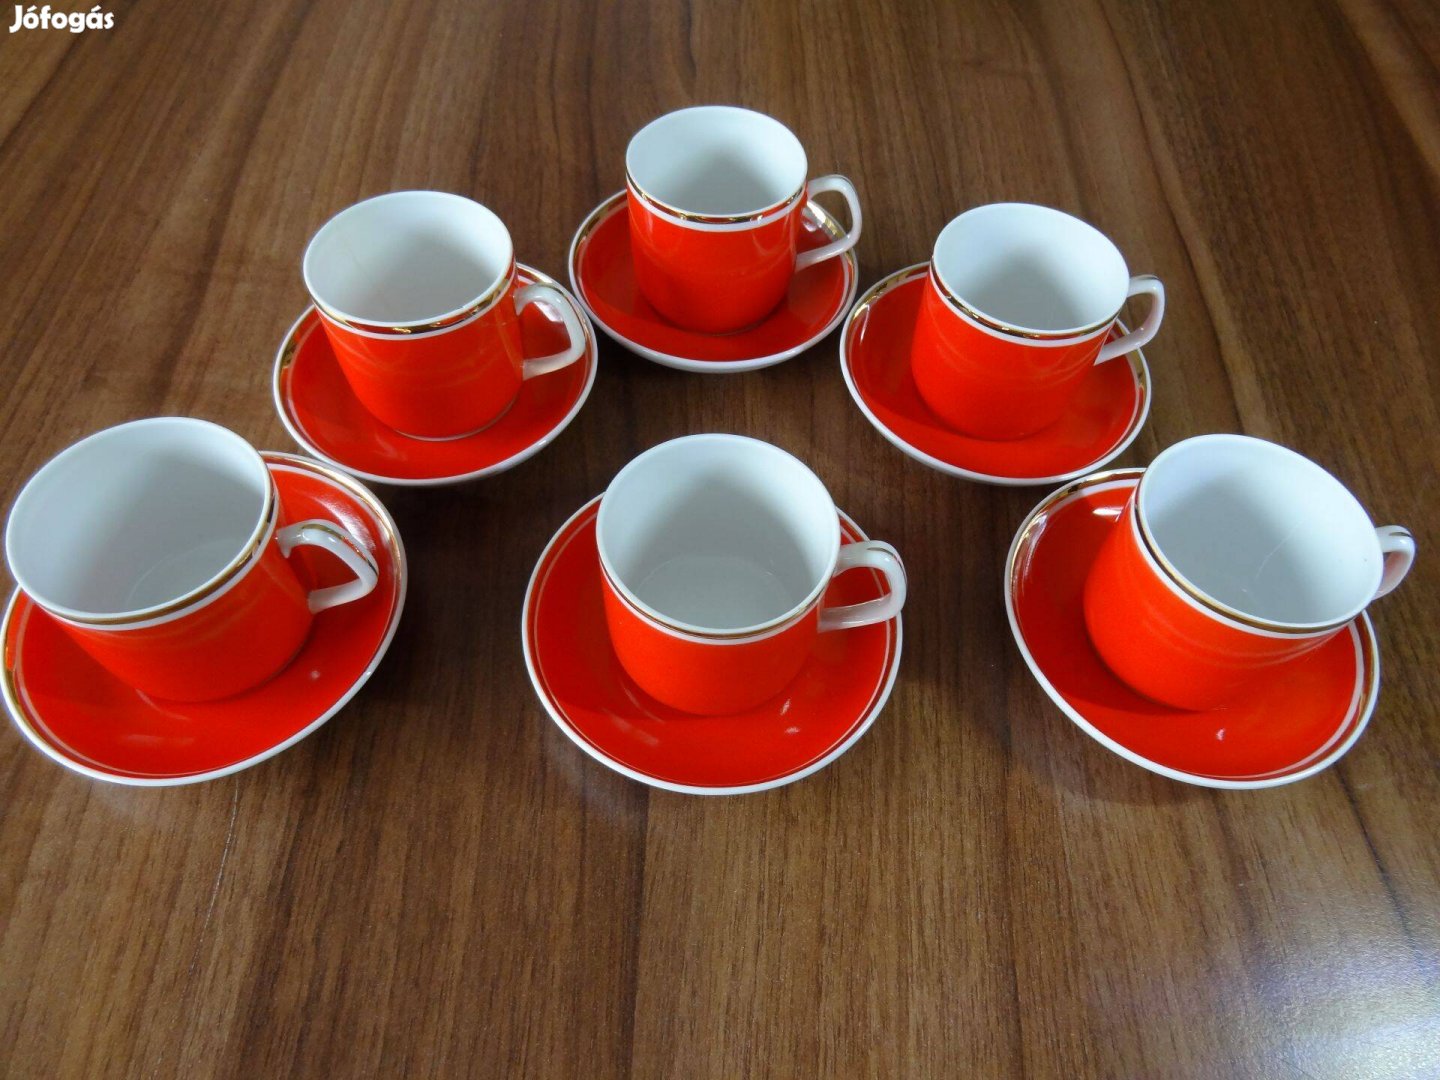 Hollóházi porcelán retró kávés készlet / ritka, élénk piros színben